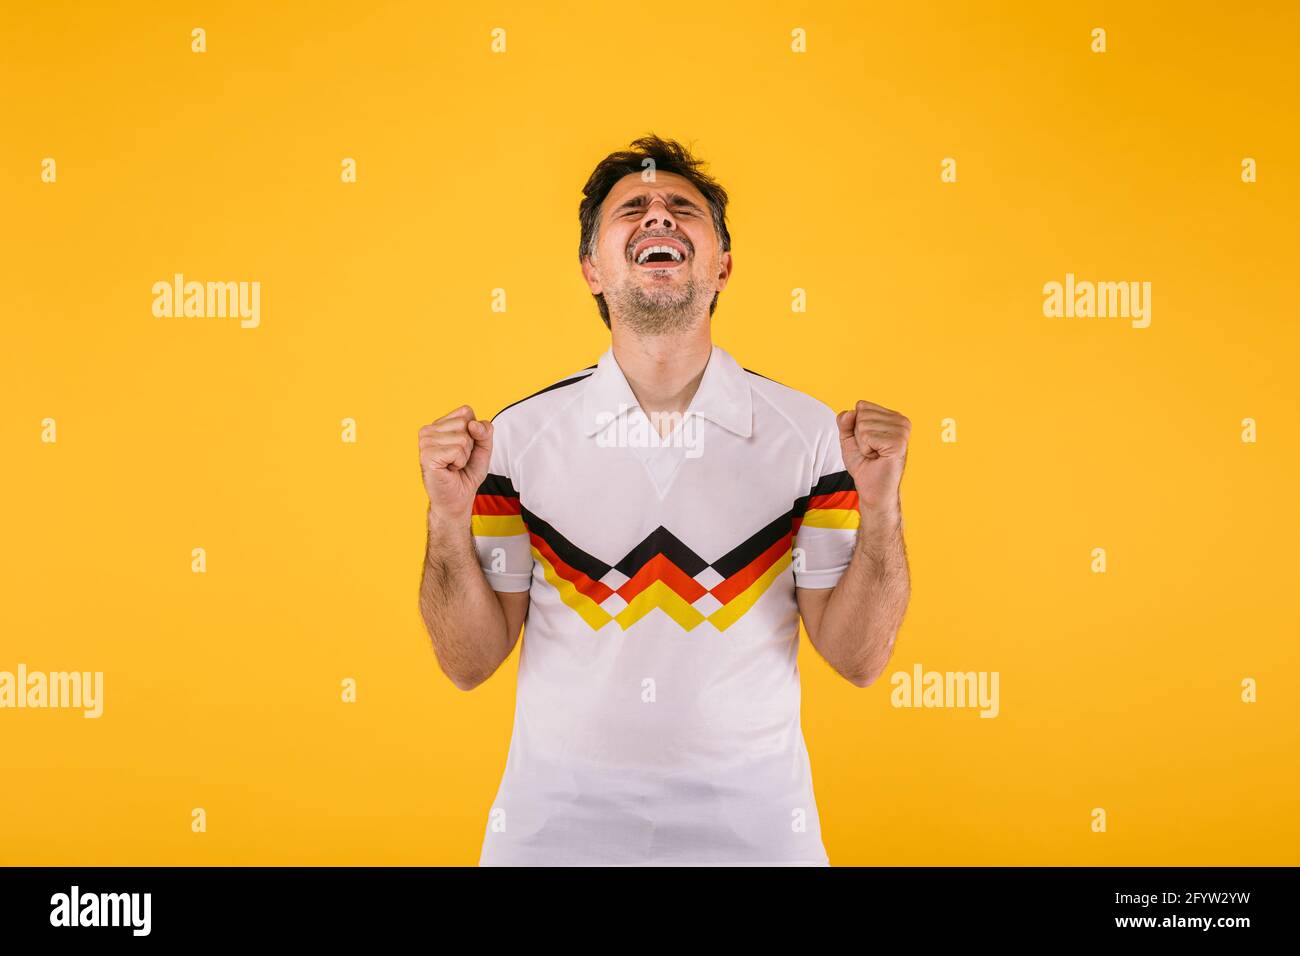 Un aficionado al fútbol que lleva una camiseta blanca con rayas negras, rojas y amarillas, aplasta a sus puños y grita a su equipo Fotografía de stock - Alamy